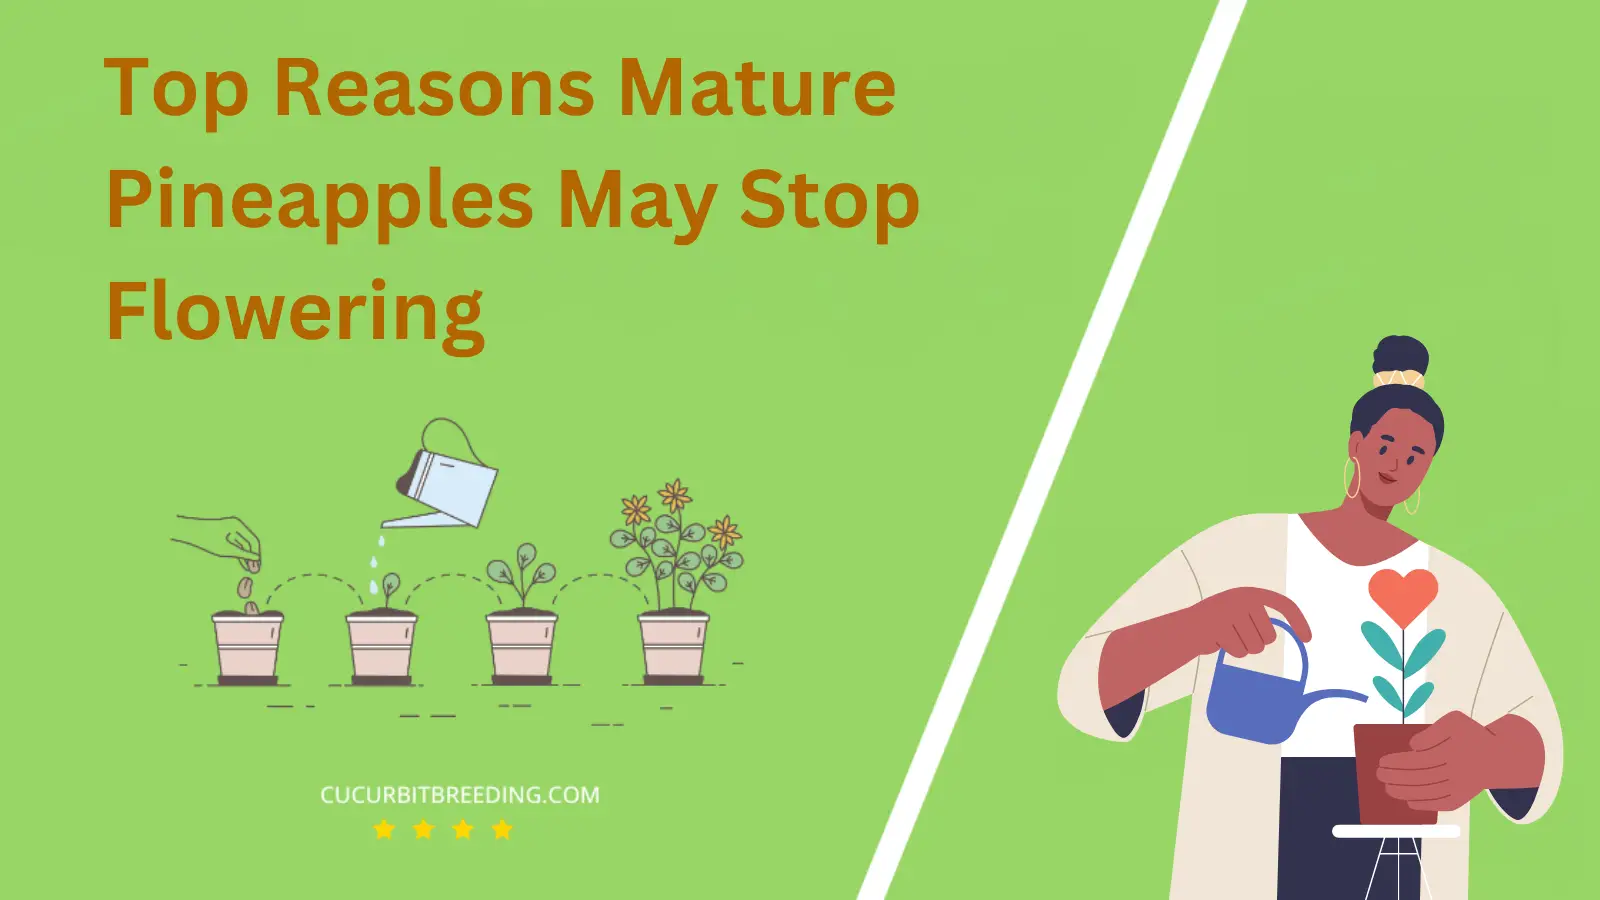 Top Reasons Mature Pineapples May Stop Flowering